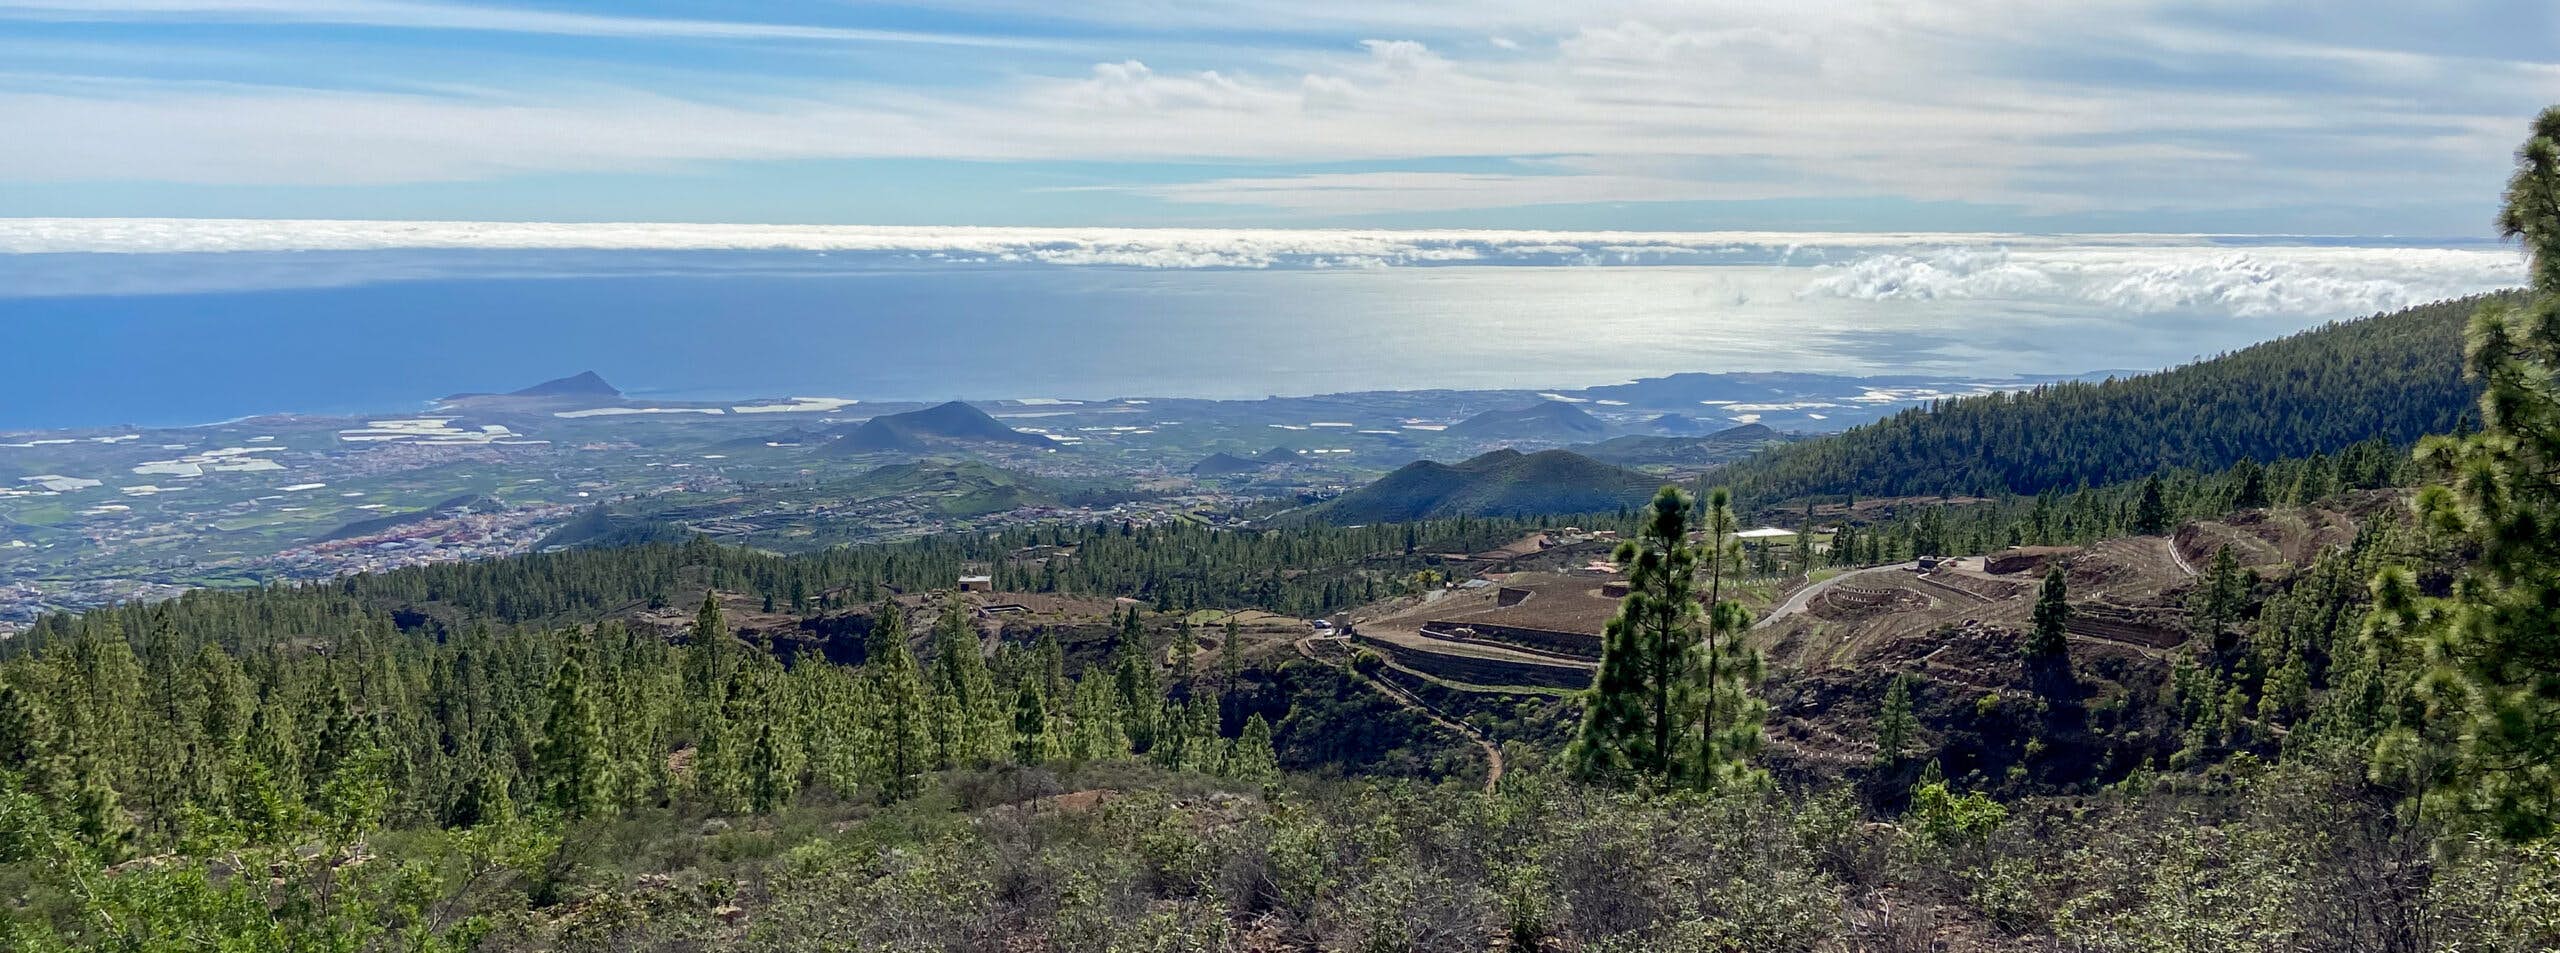 Vista sobre los campos adosados a la costa este de Tenerife